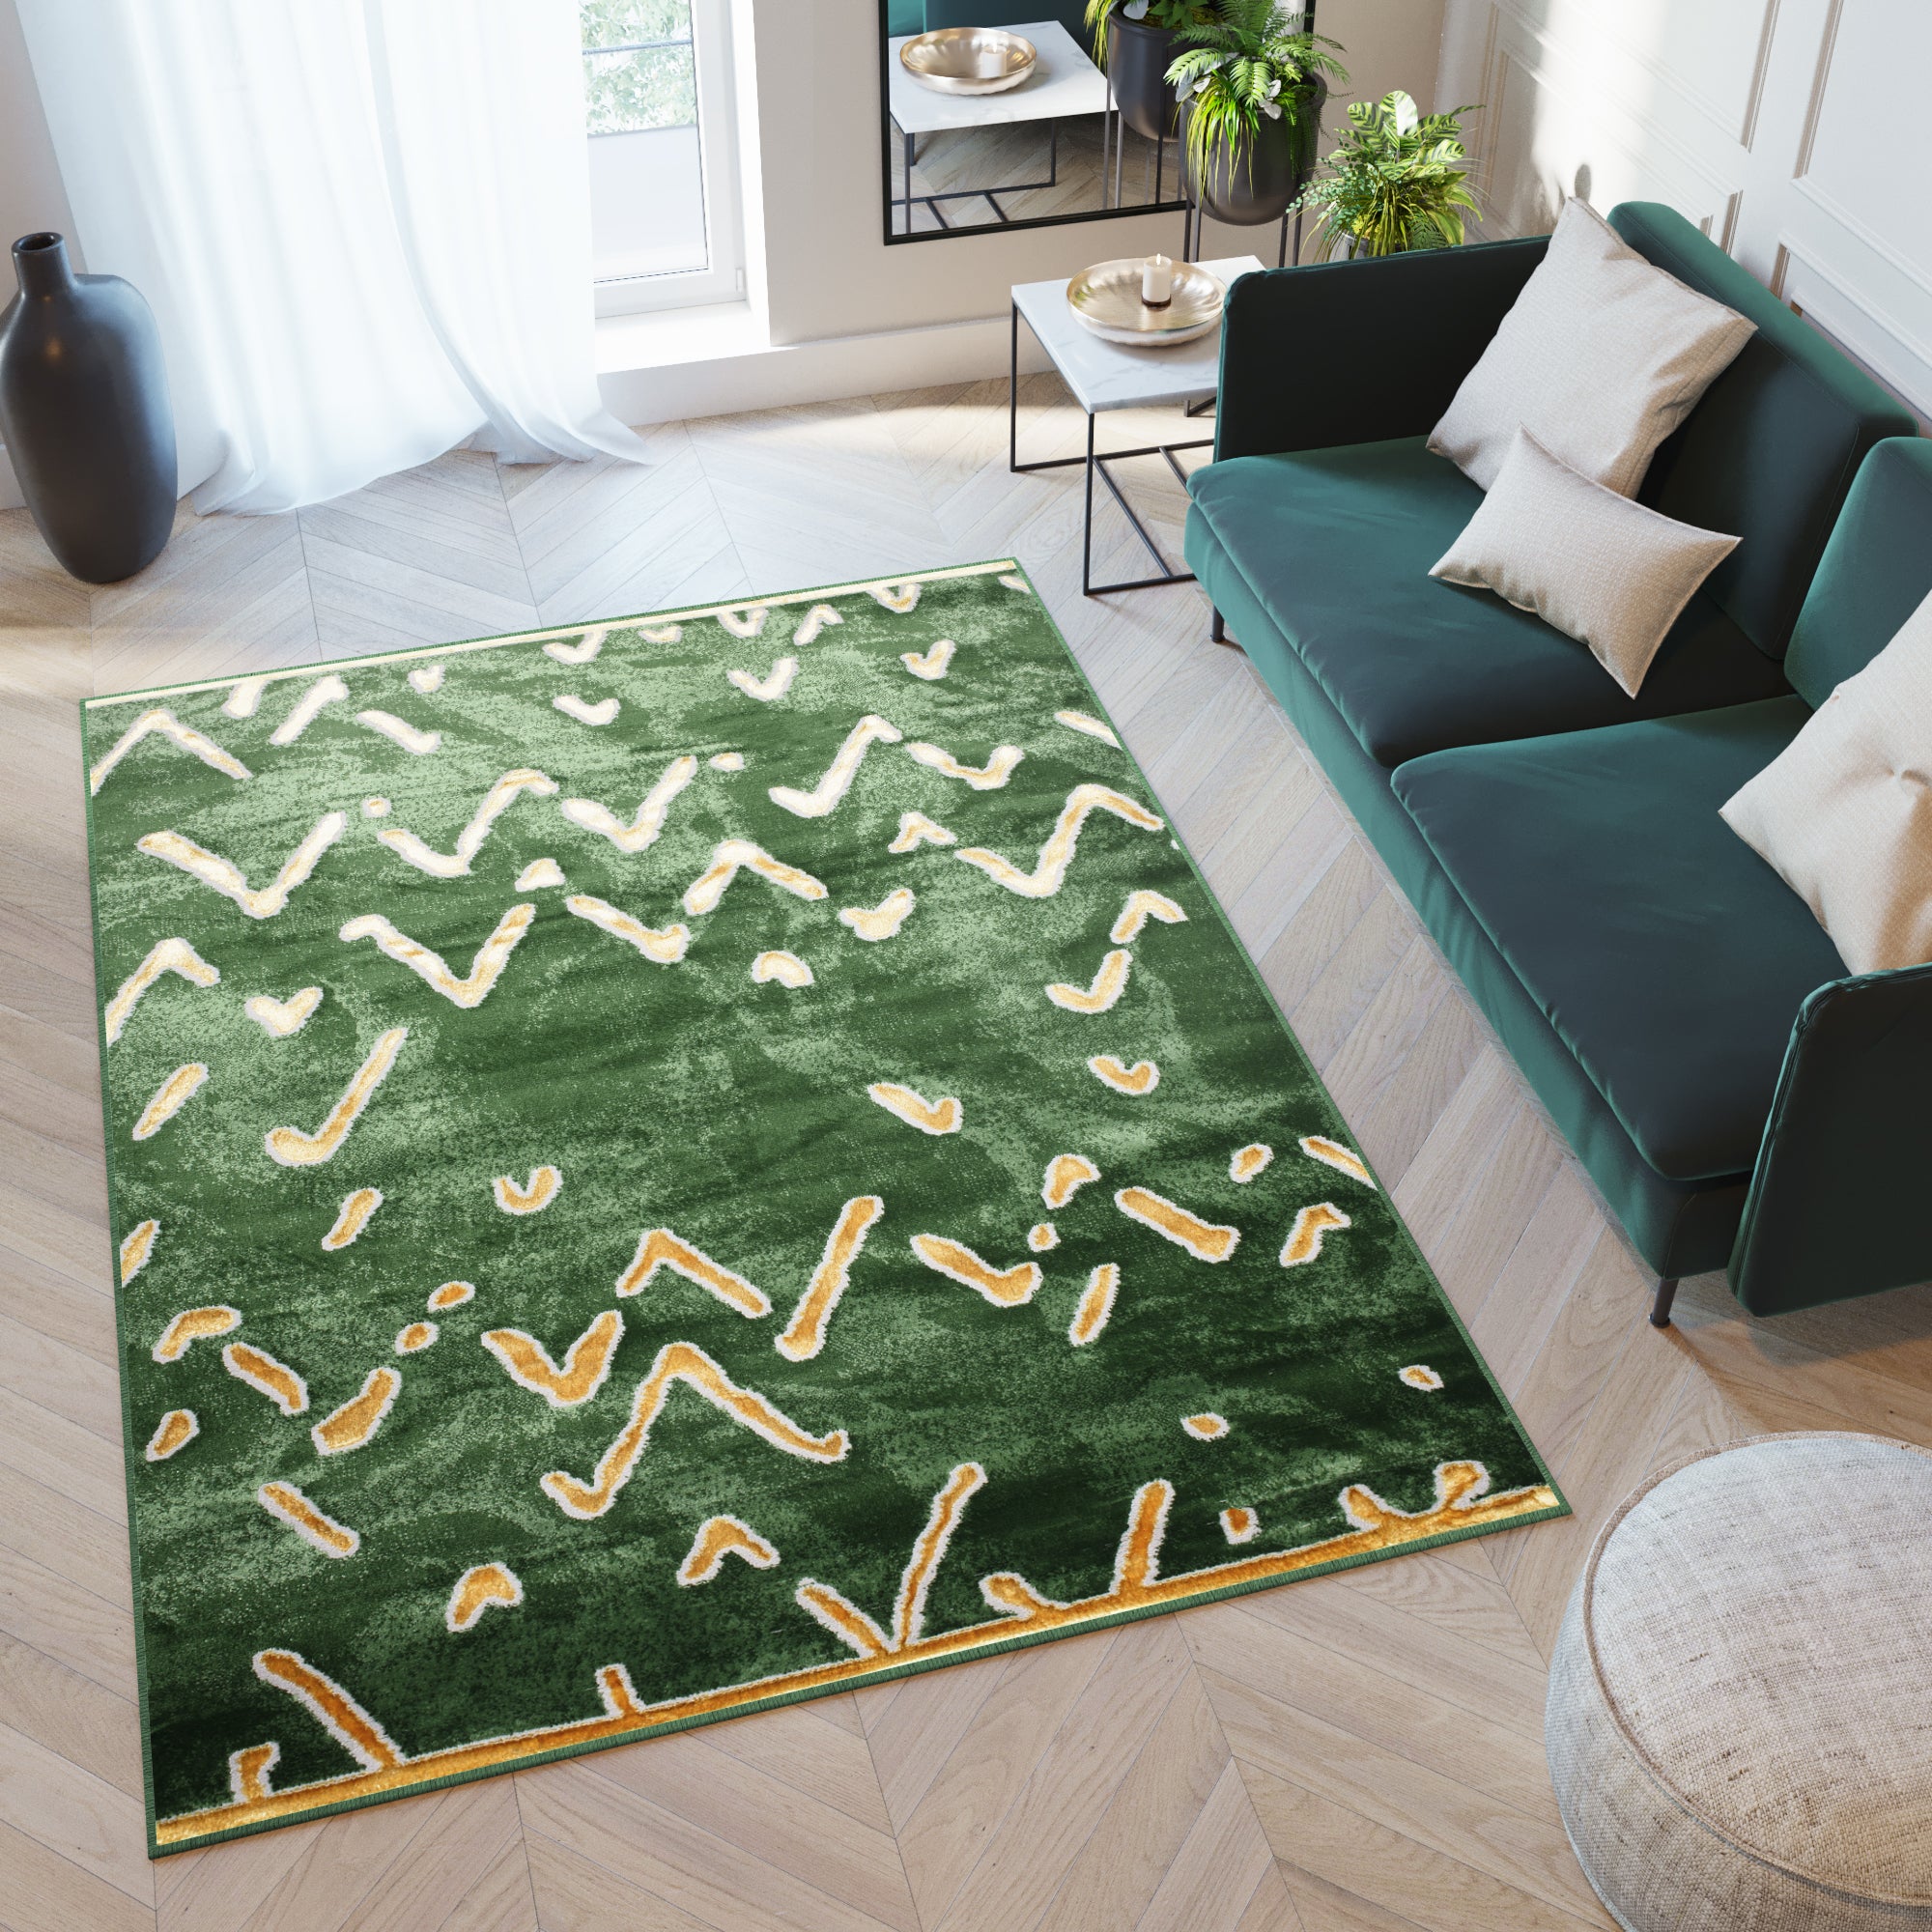 Estas son las últimas tendencias en alfombras para el salón - Foto 1